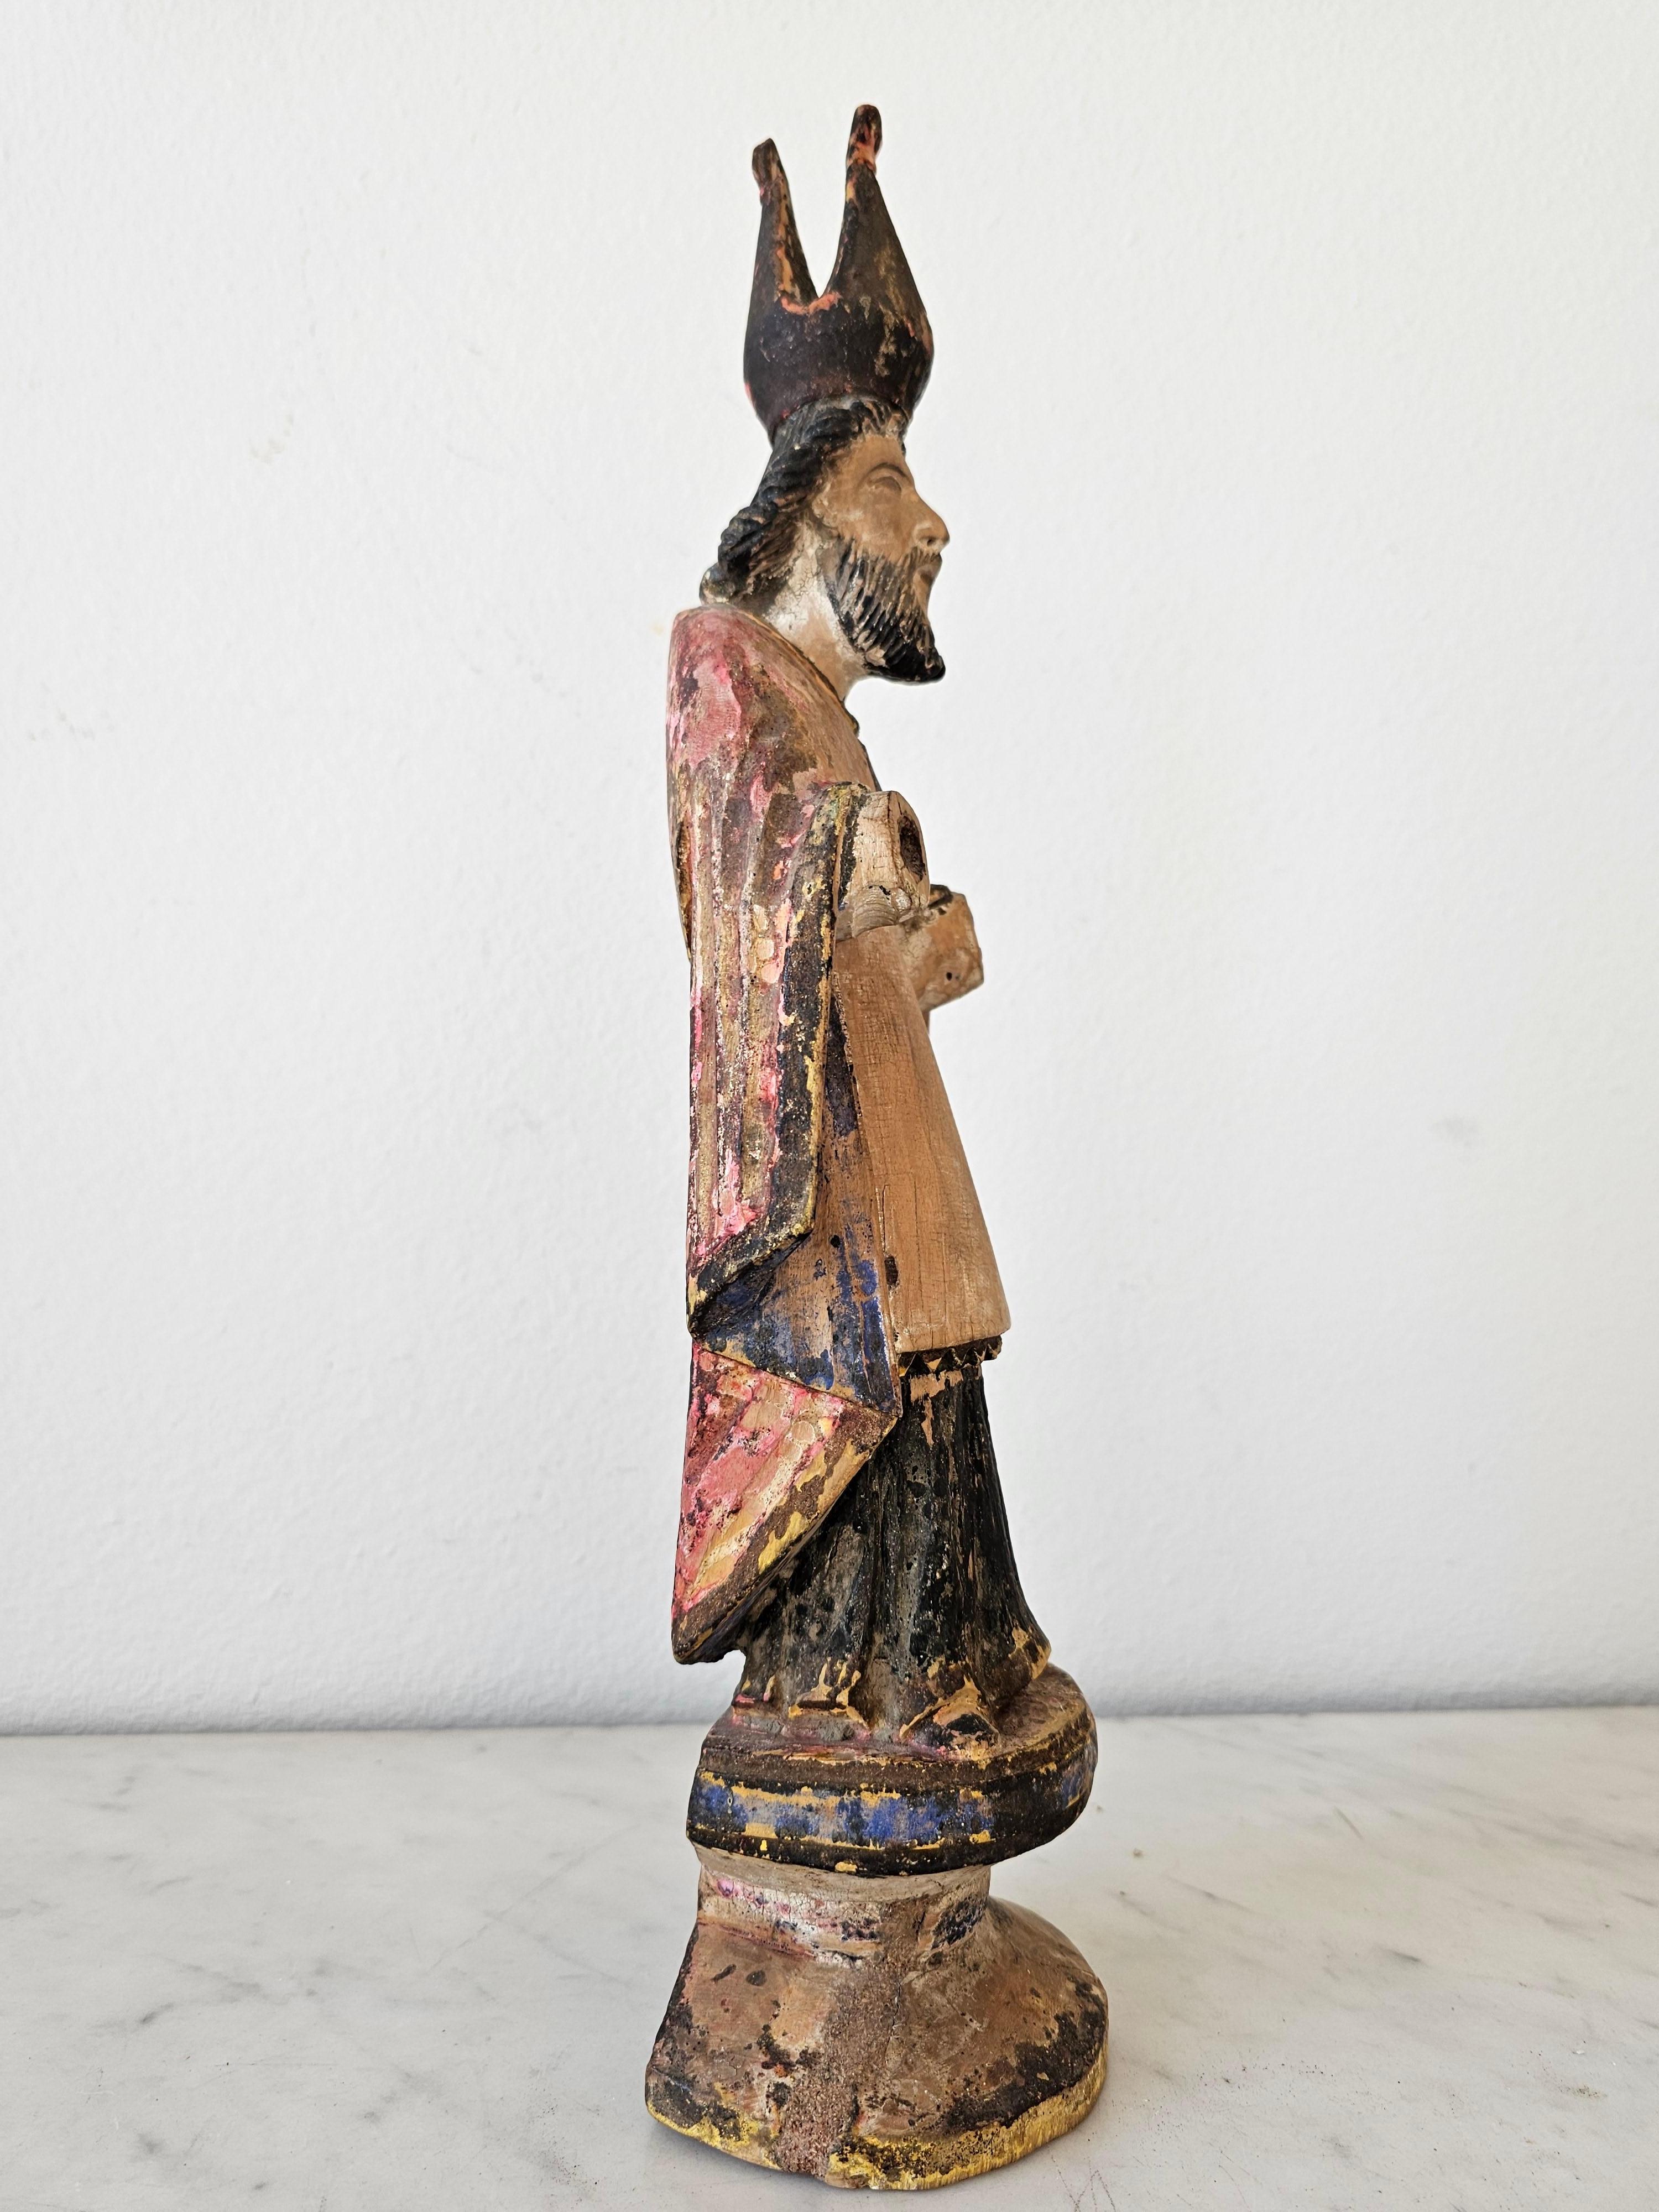 antique santos figures for sale